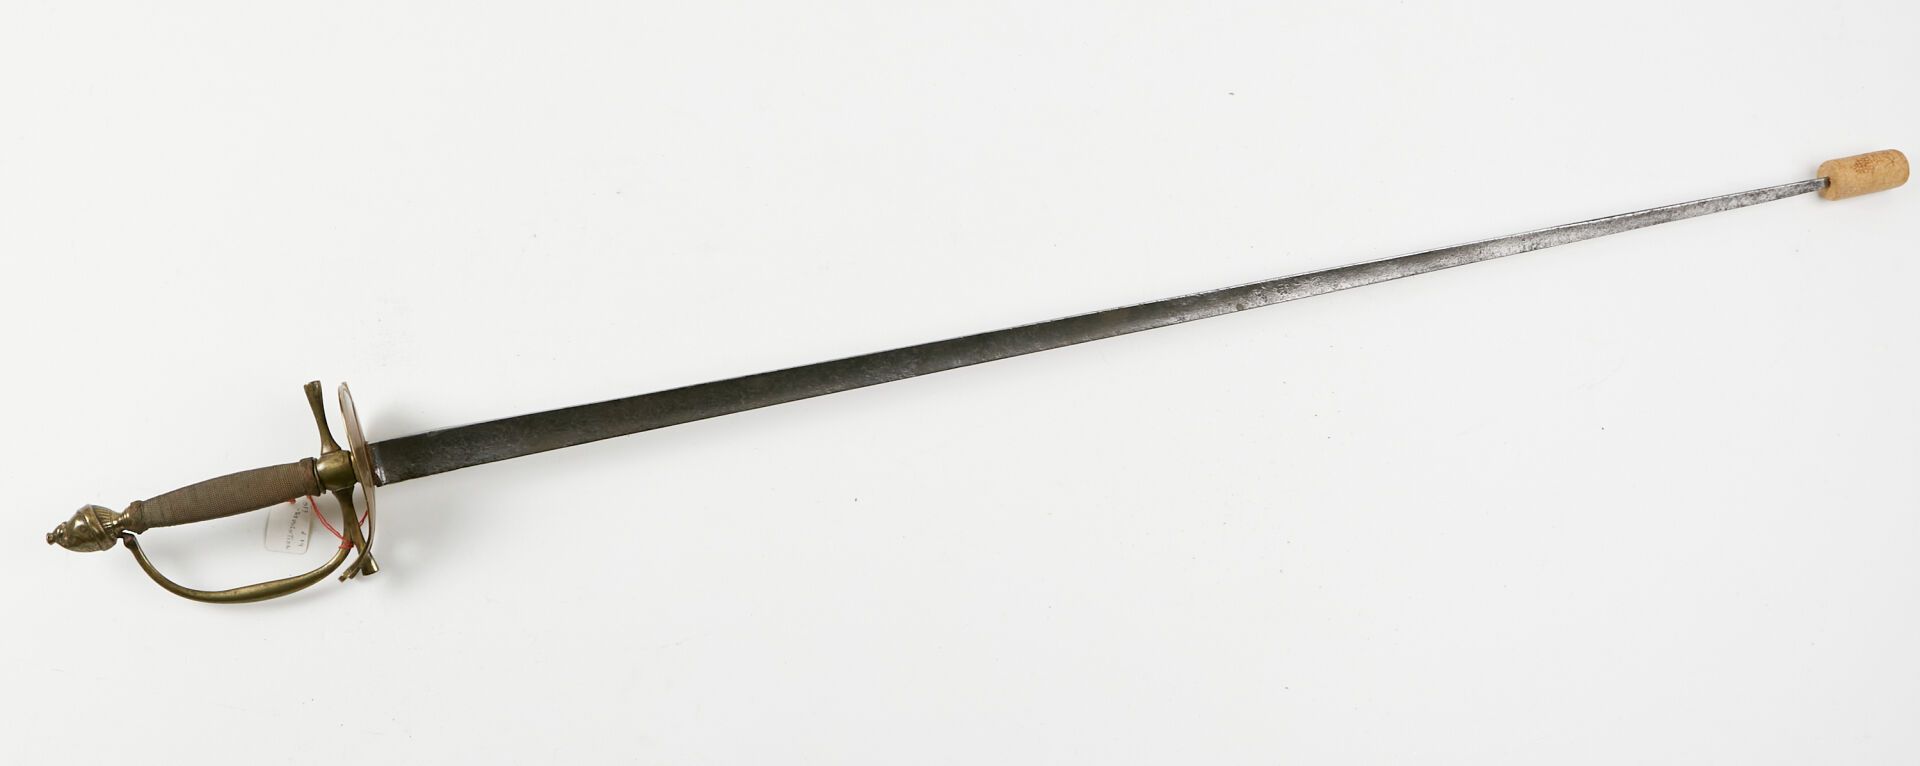 Null Uniform sword.
Brass filigree spike, brass mount, pommel with Phrygian cap,&hellip;